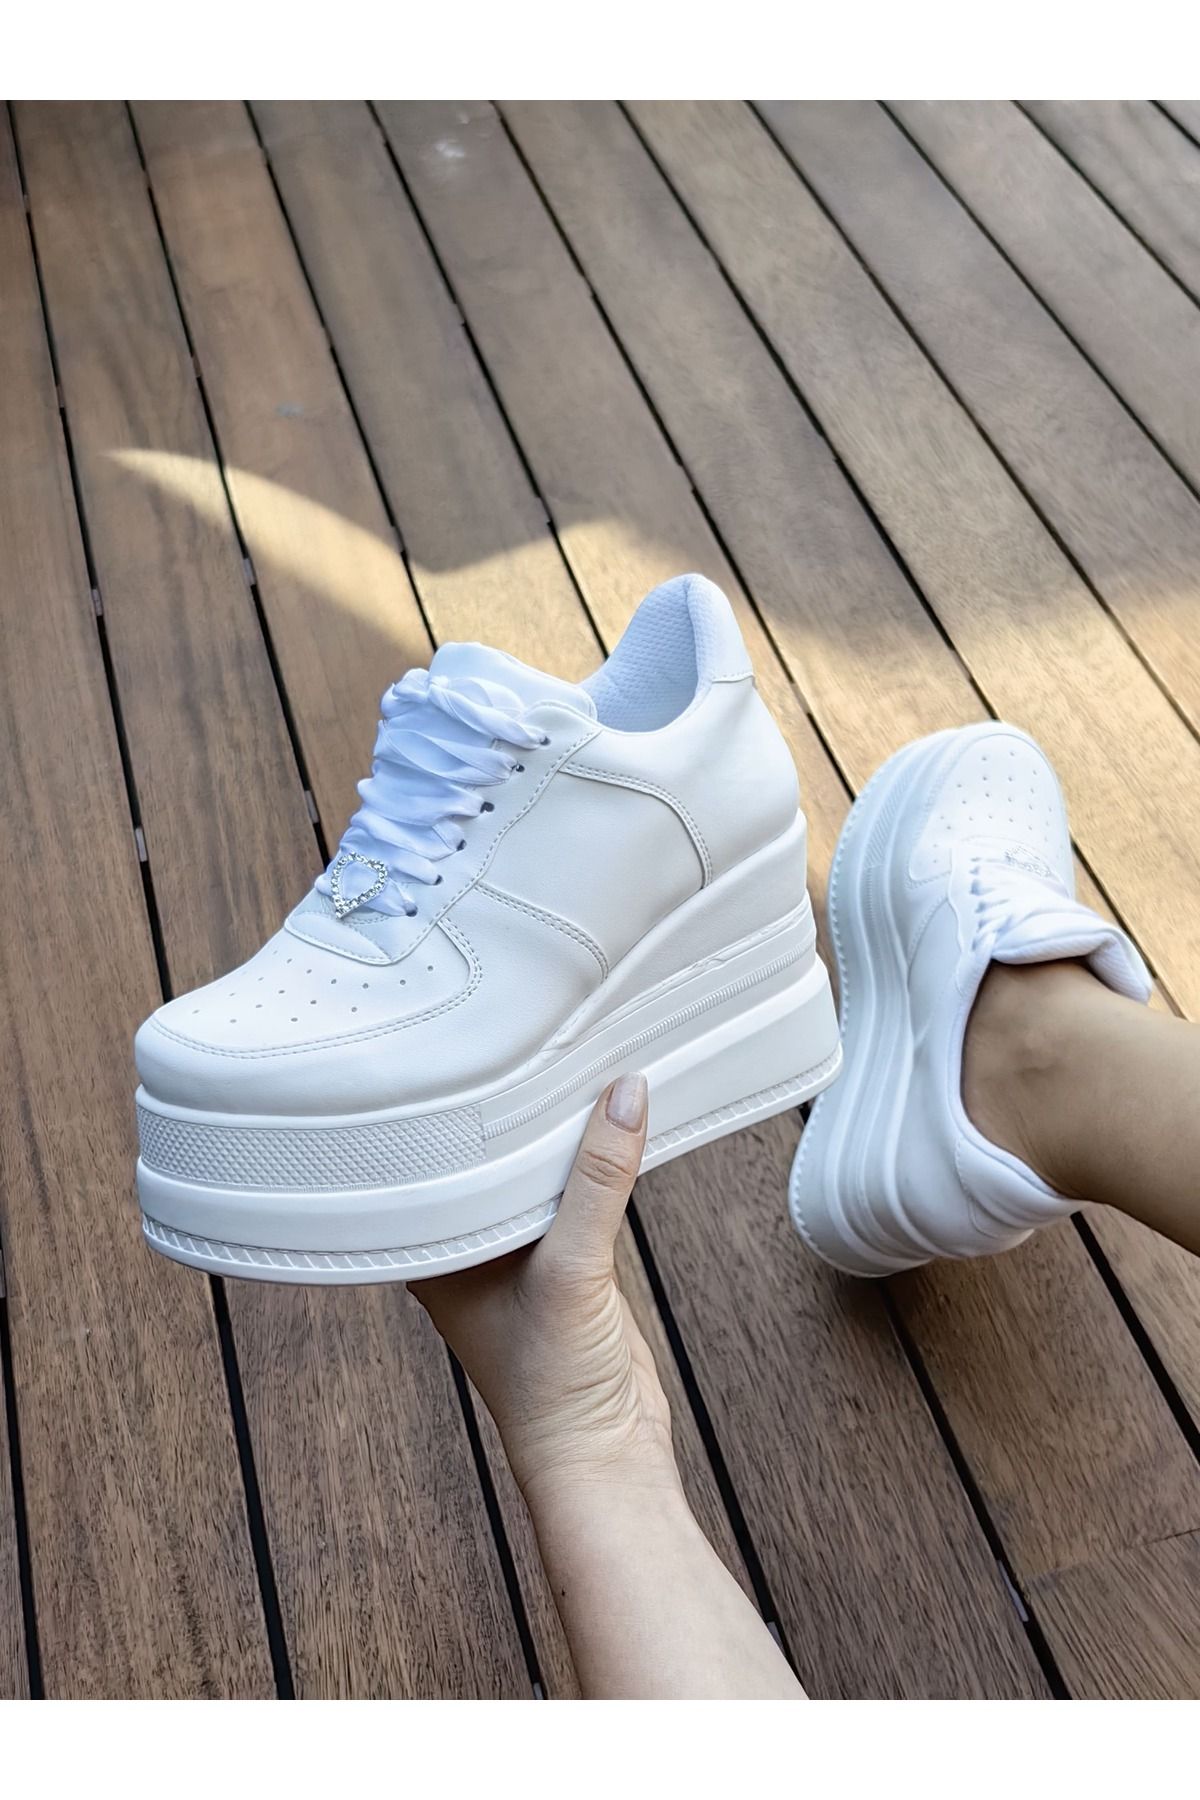 Ayakkabı Tutkusu Stilo ® Beyaz Dolgu Topuk Aşırı Rahat 9cm Rahat Yüksek Topuk Ayakkabı